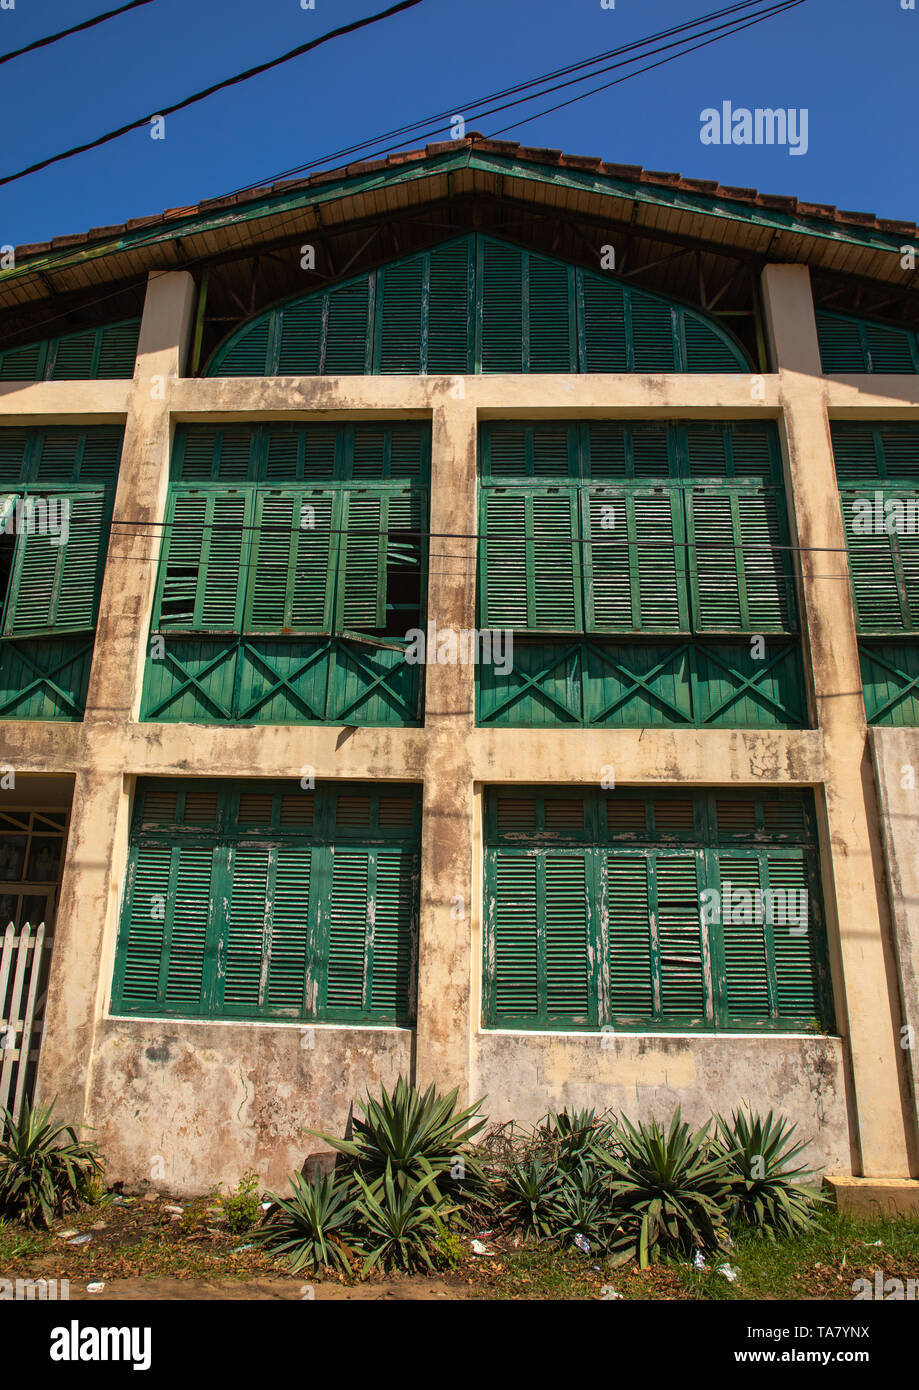 Ancien bâtiment colonial français anciennement la maison des douanes dans le domaine du patrimoine mondial de l'UNESCO, Sud-Comoé, Grand-Bassam, Côte d'Ivoire Banque D'Images